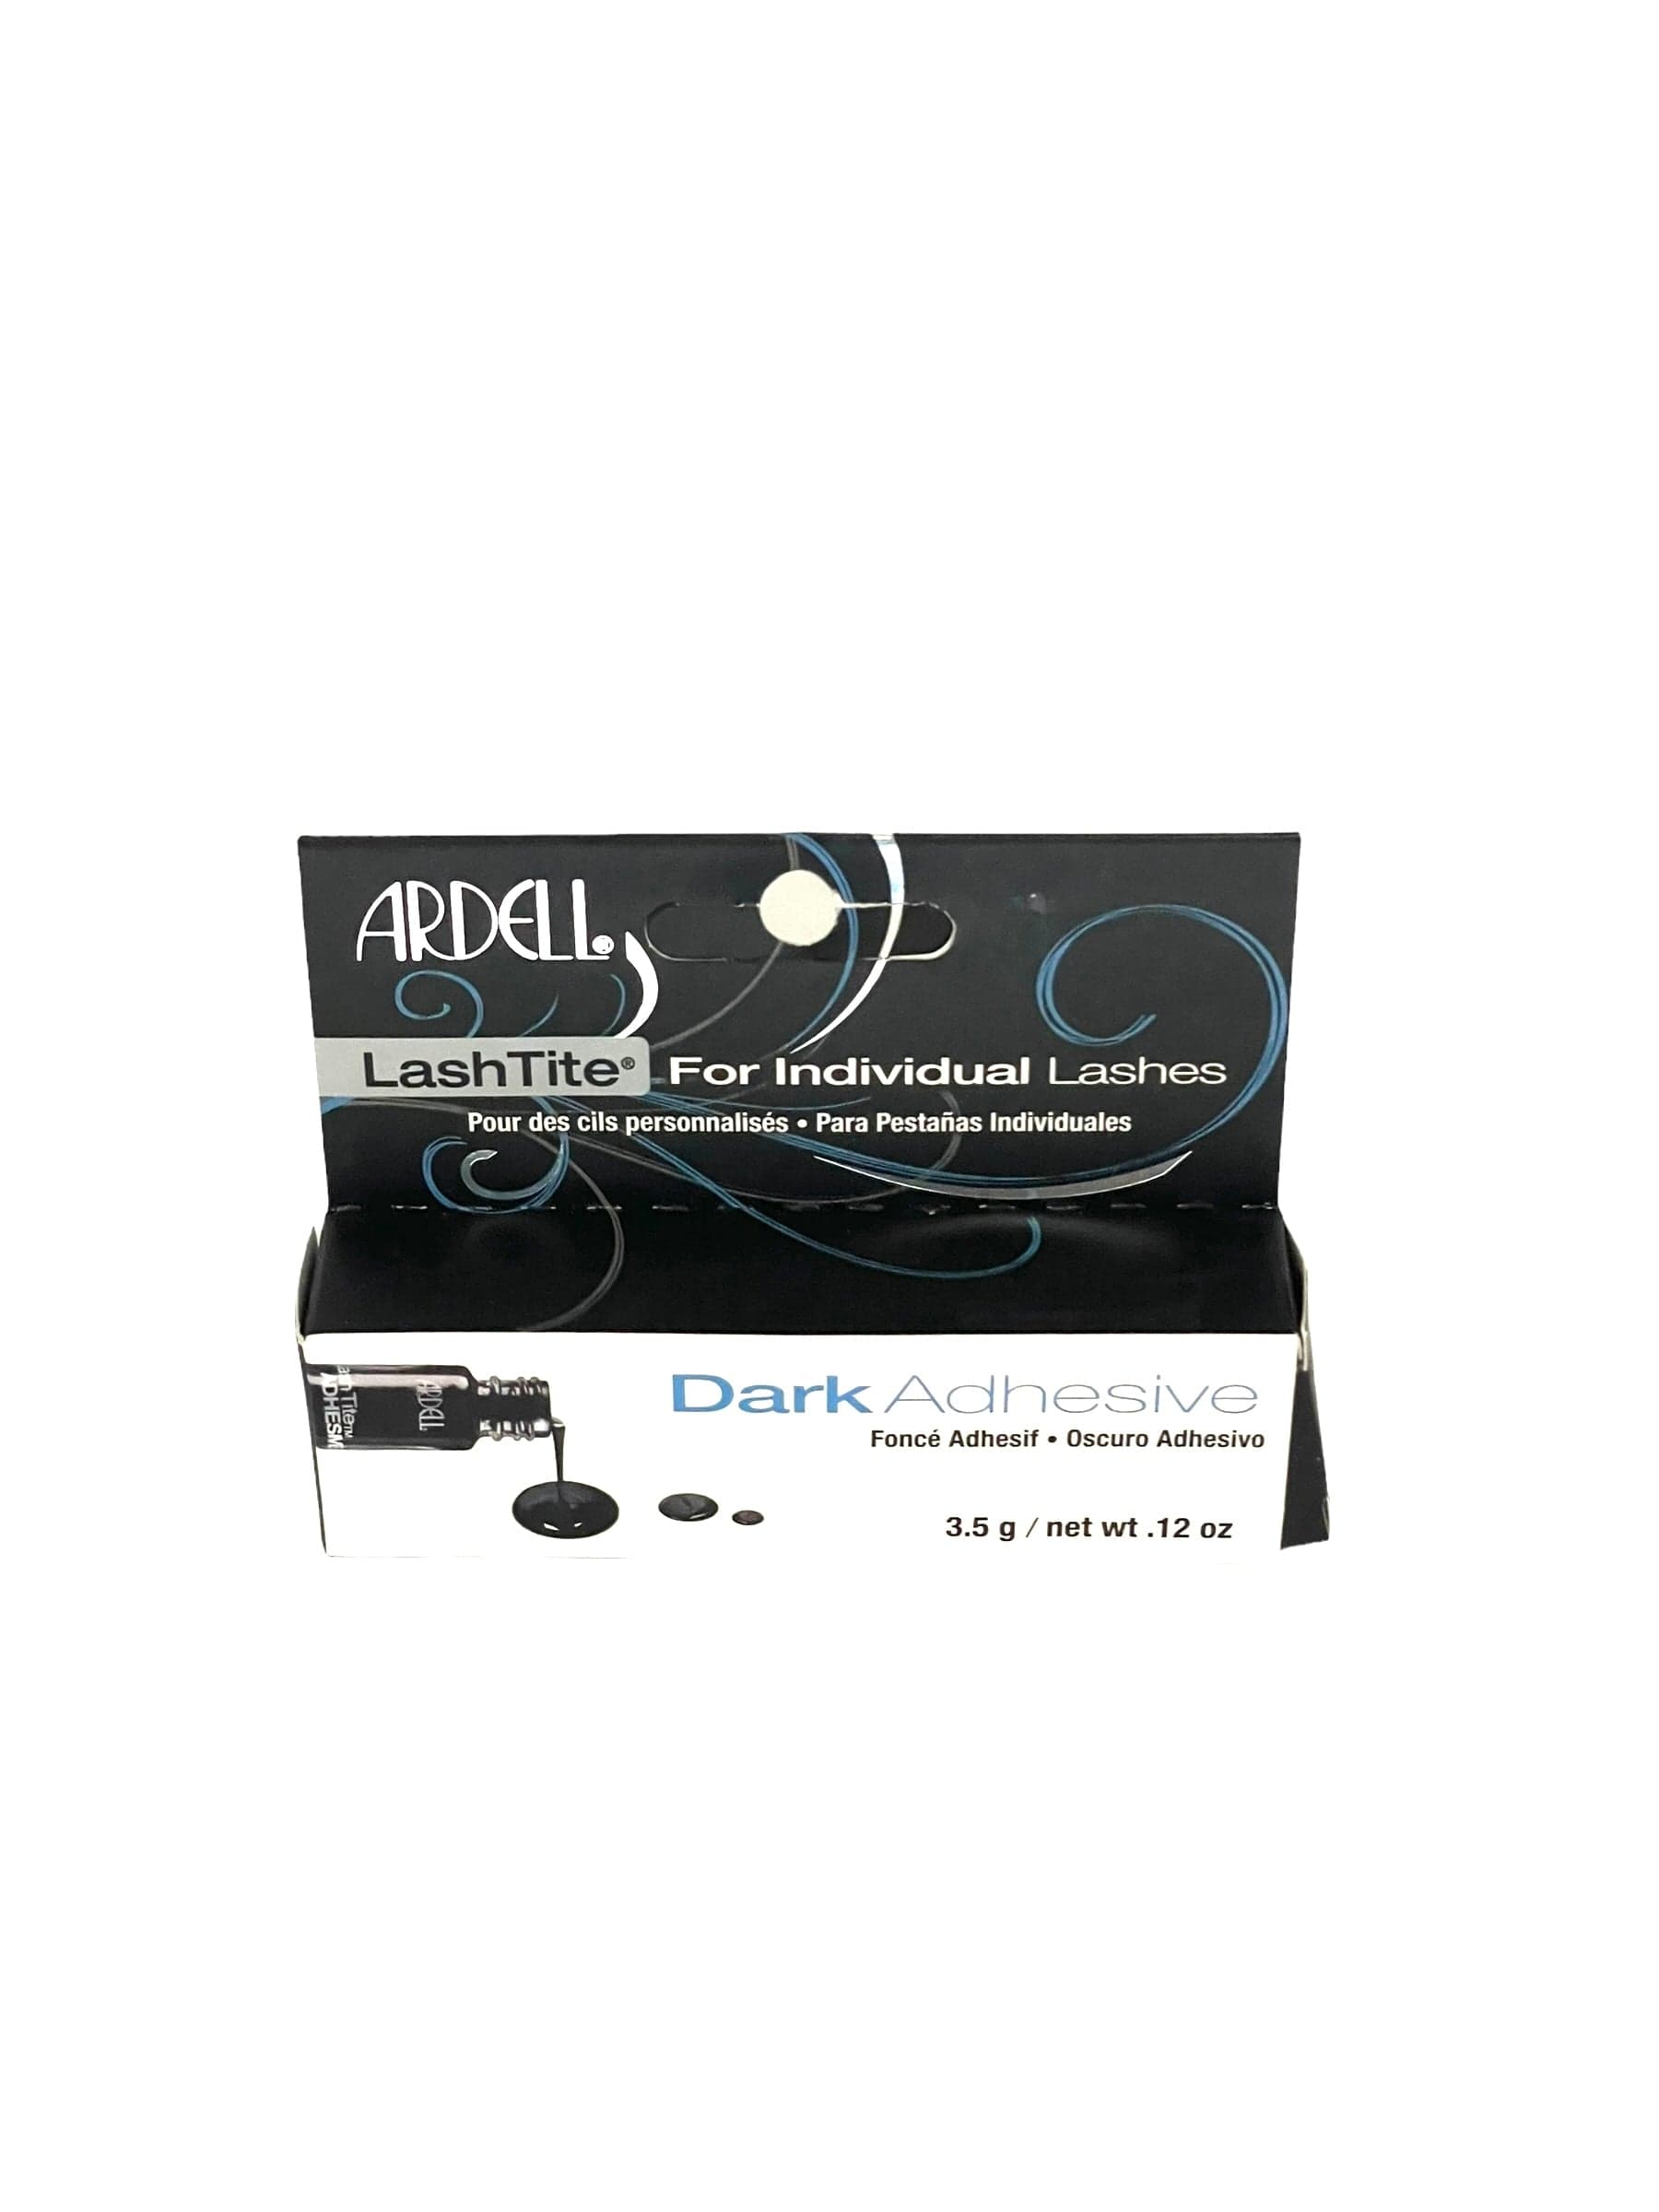 Ardell LashTite Adhesive For Individual Lashes Dark 0.125 oz False Eyelash Adhesive